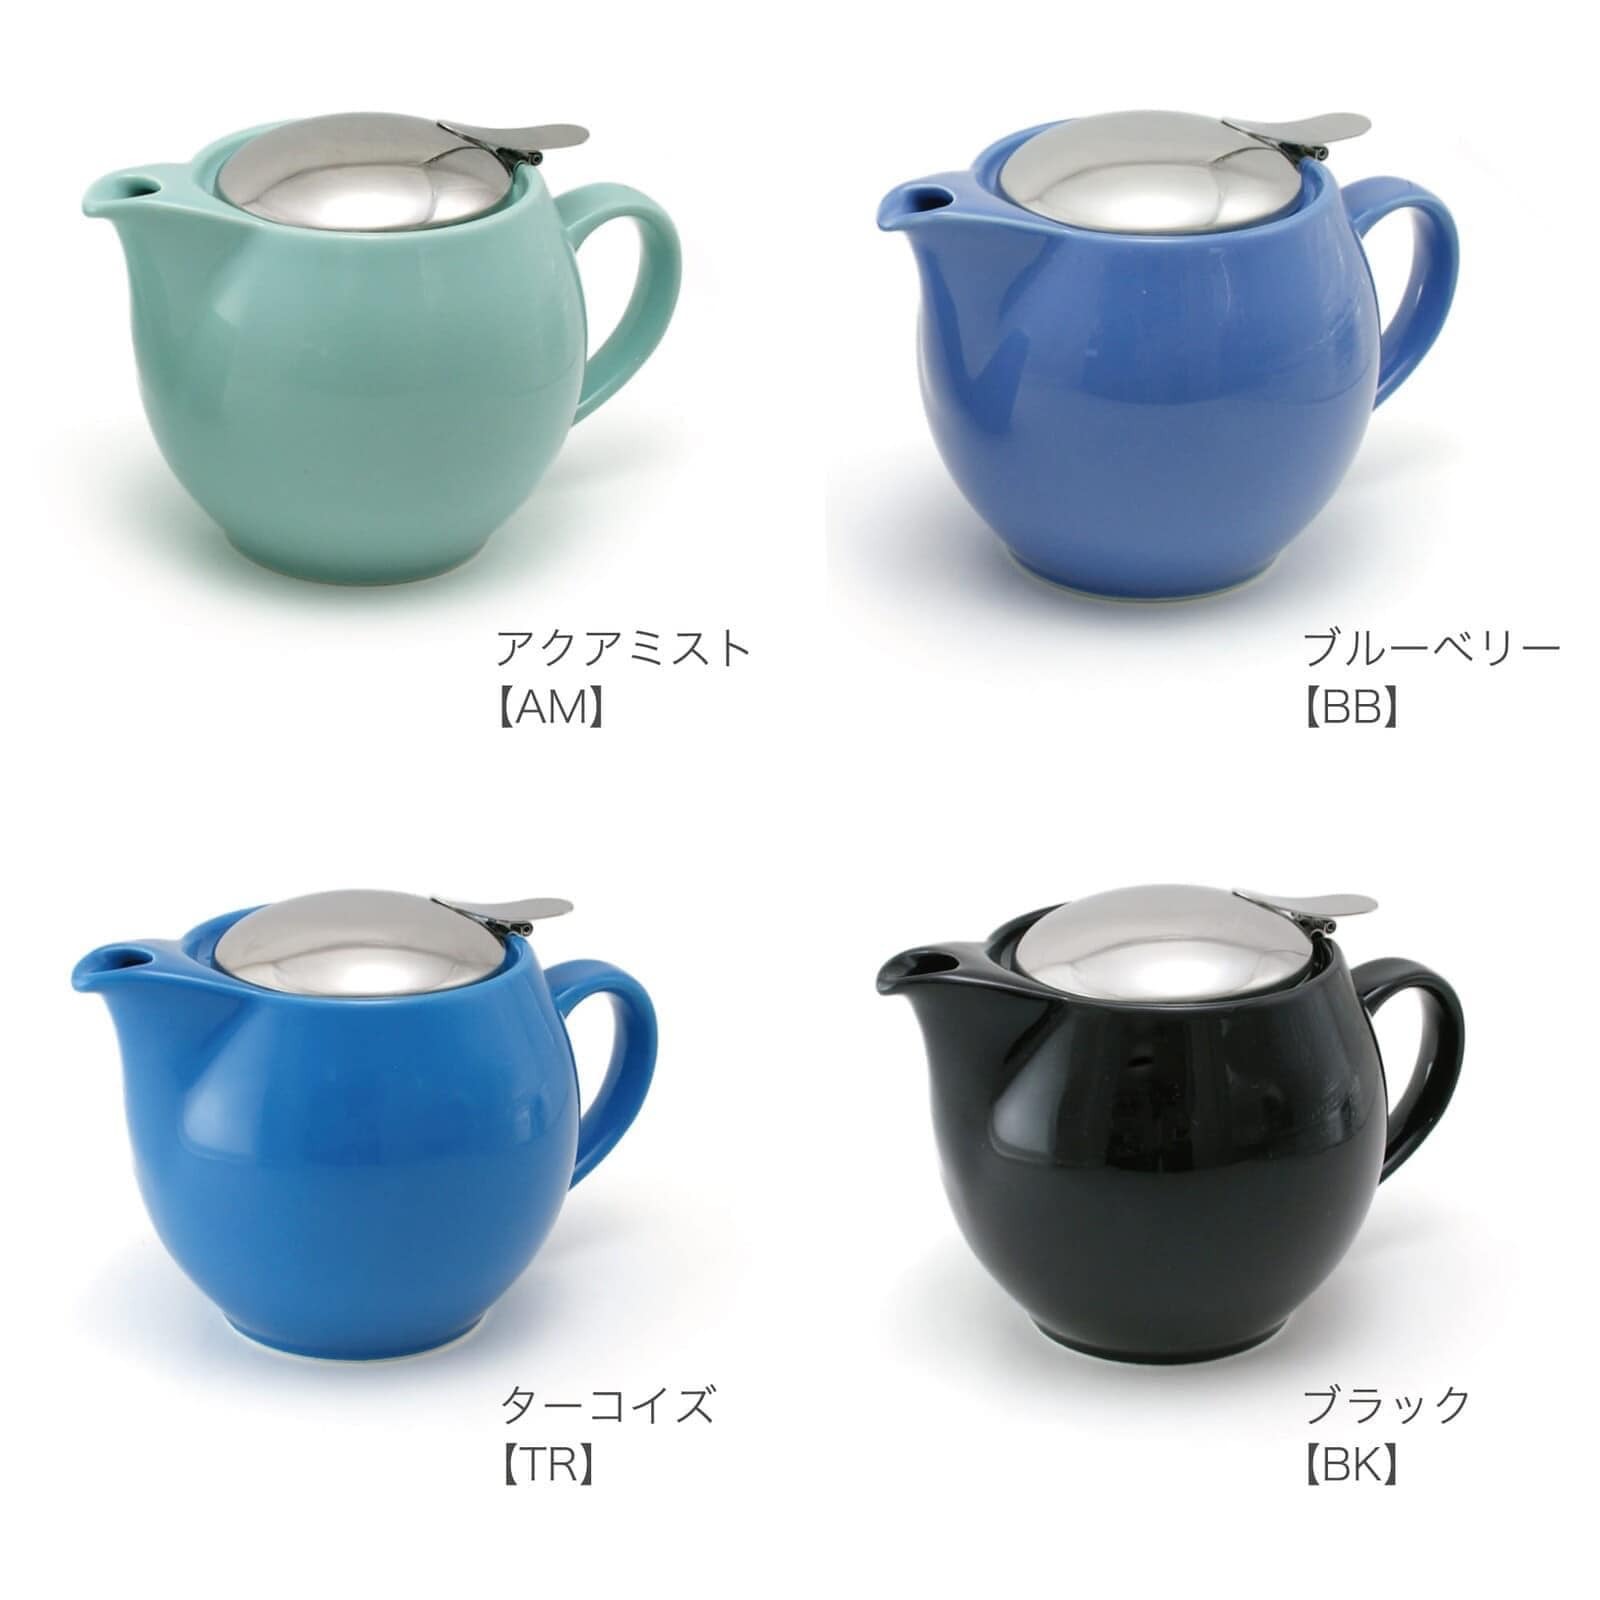 【cierto】Universal 茶壺 3人用 450cc 美濃燒3